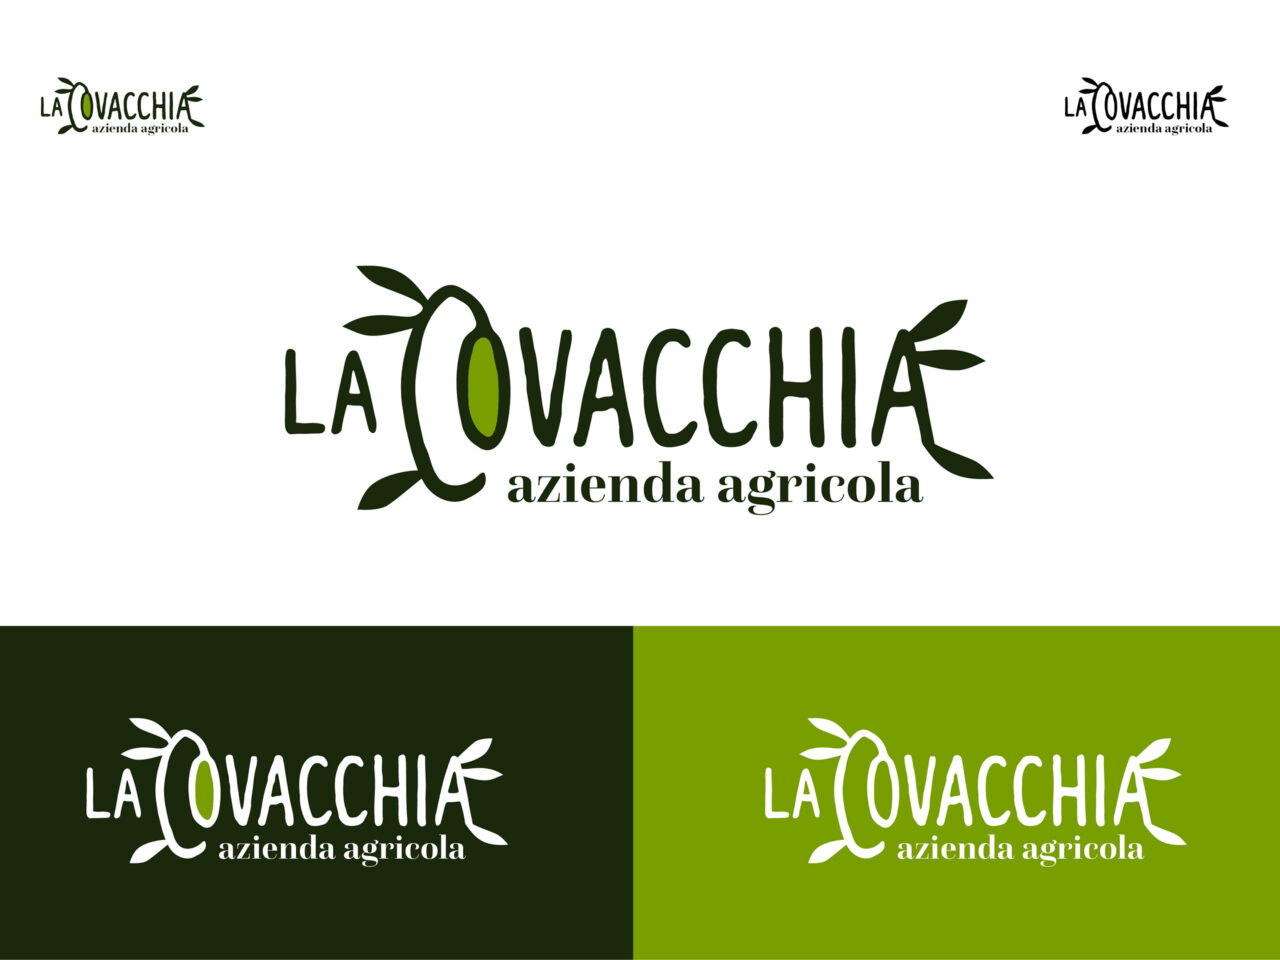 LA COVACCHIA_01